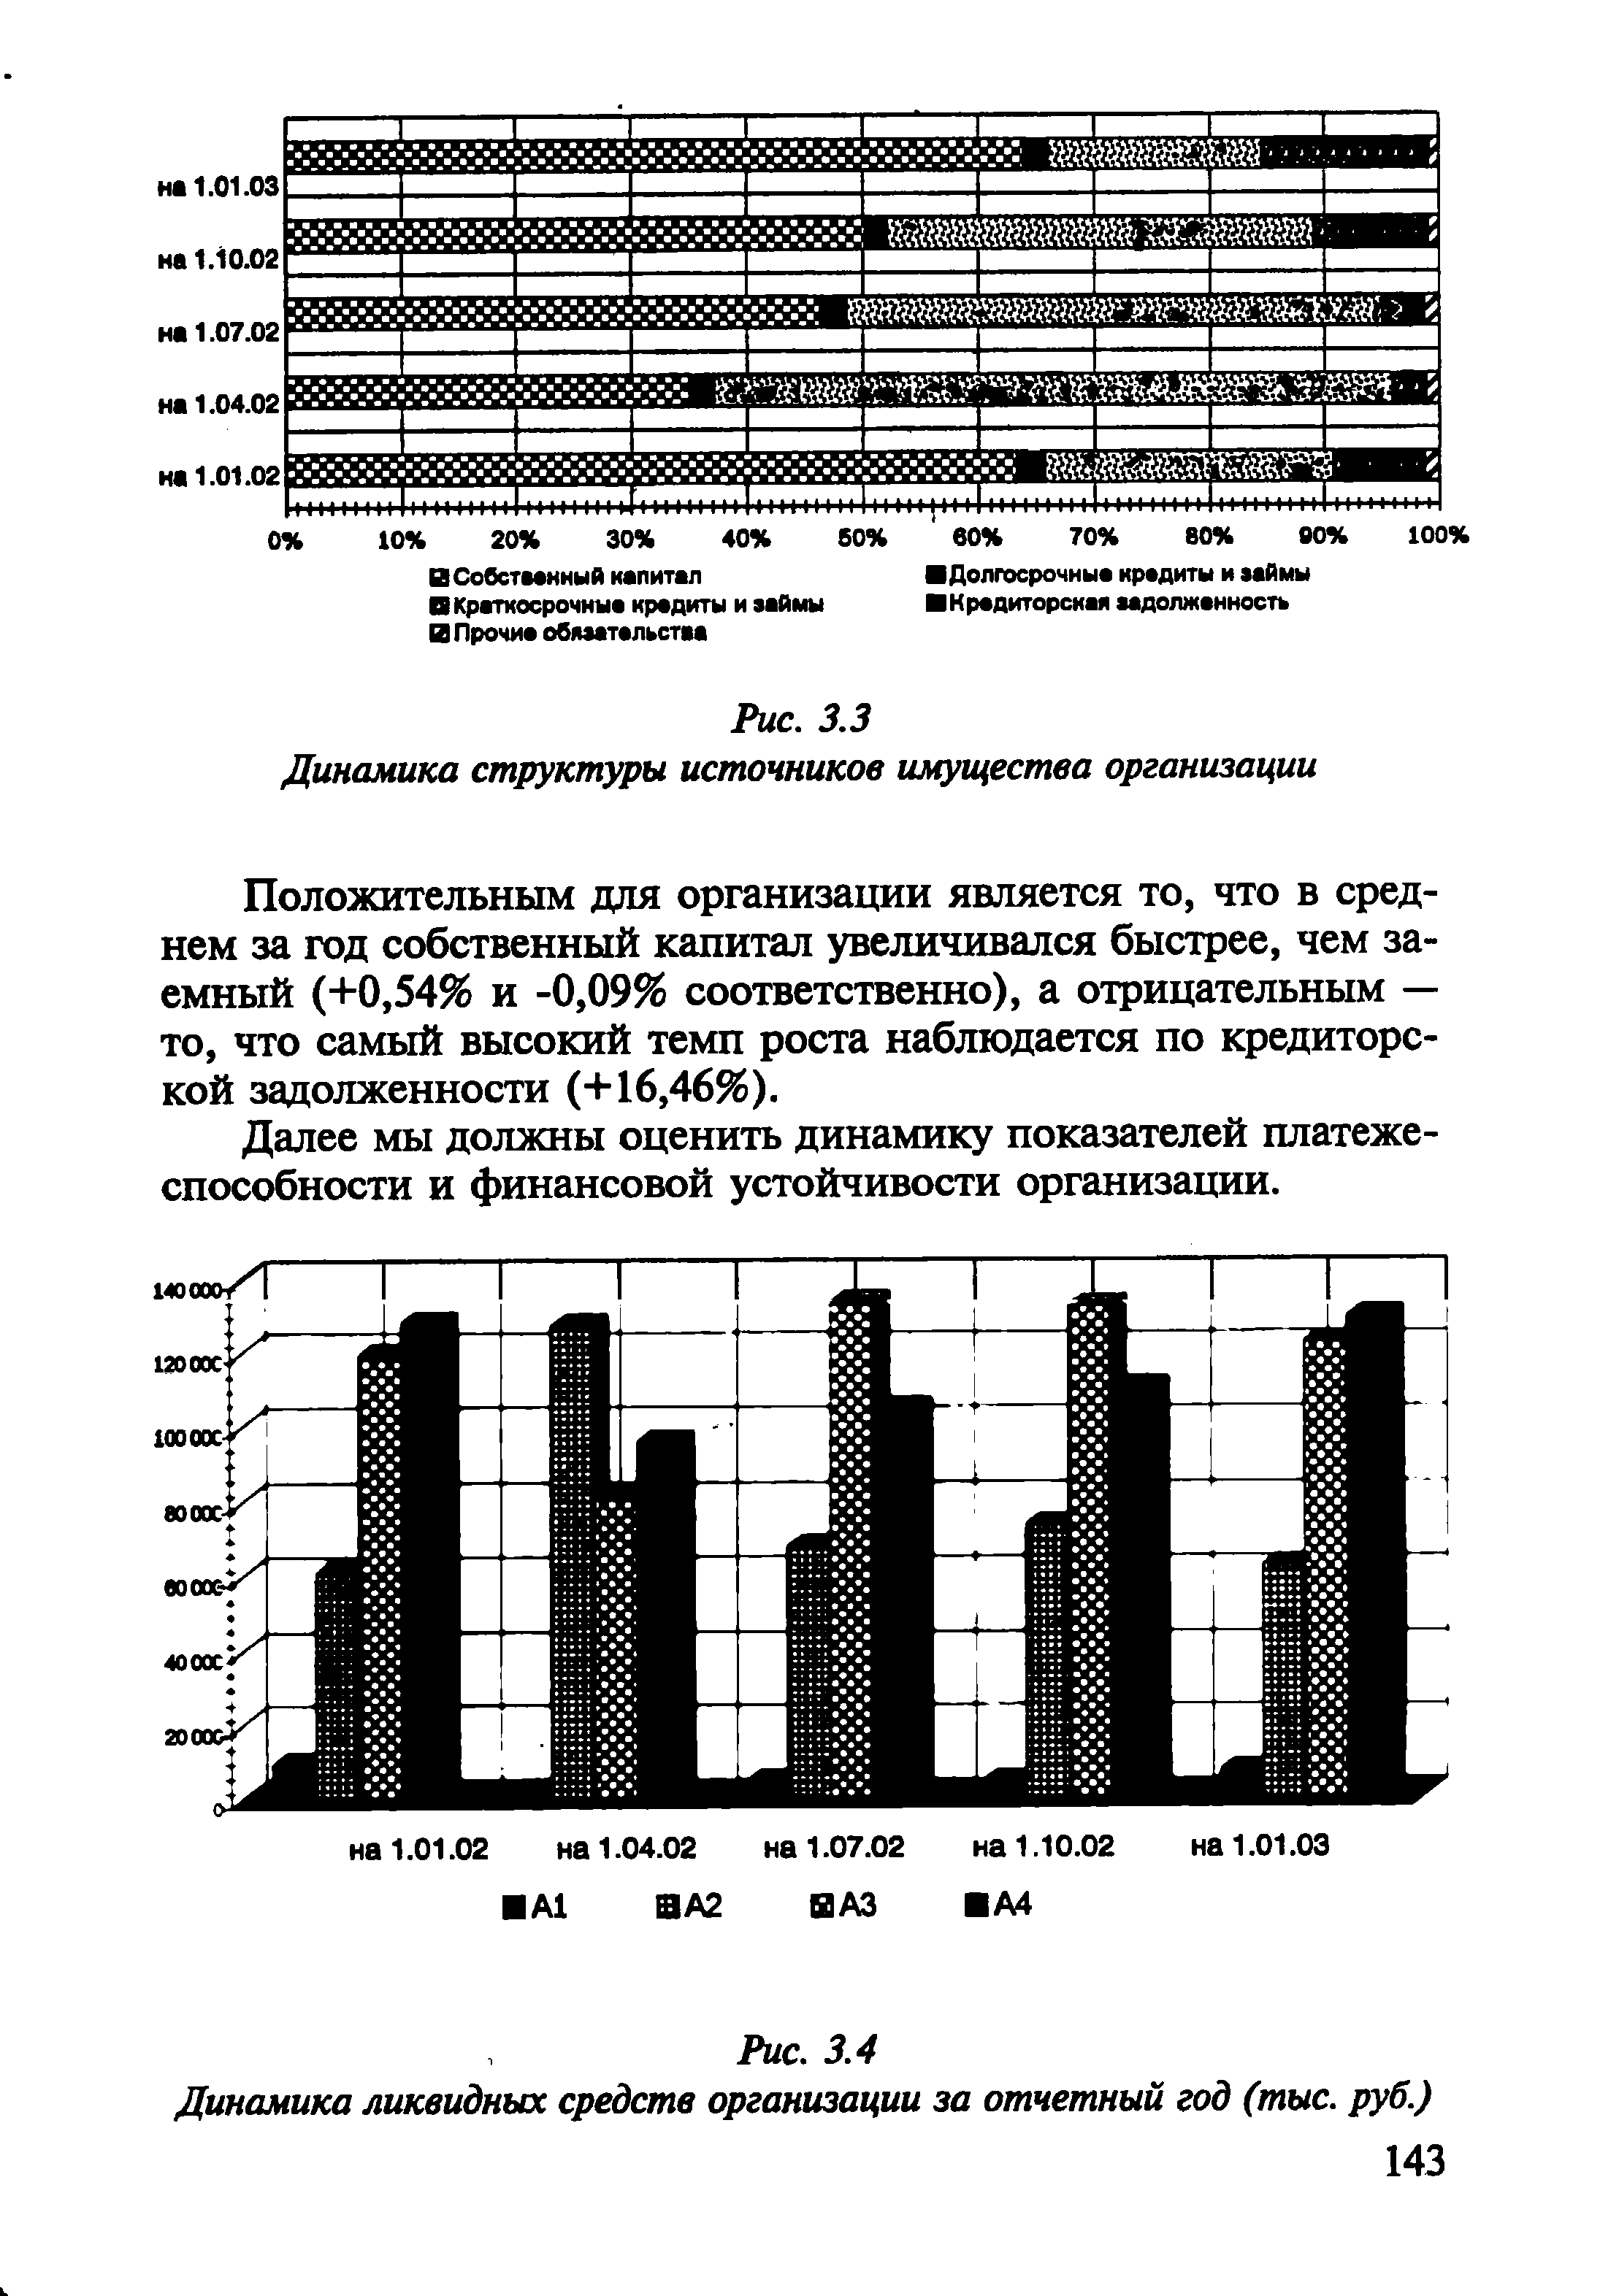 Рис. 3.4 Динамика ликвидных средств организации за отчетный год (тыс. руб.)
